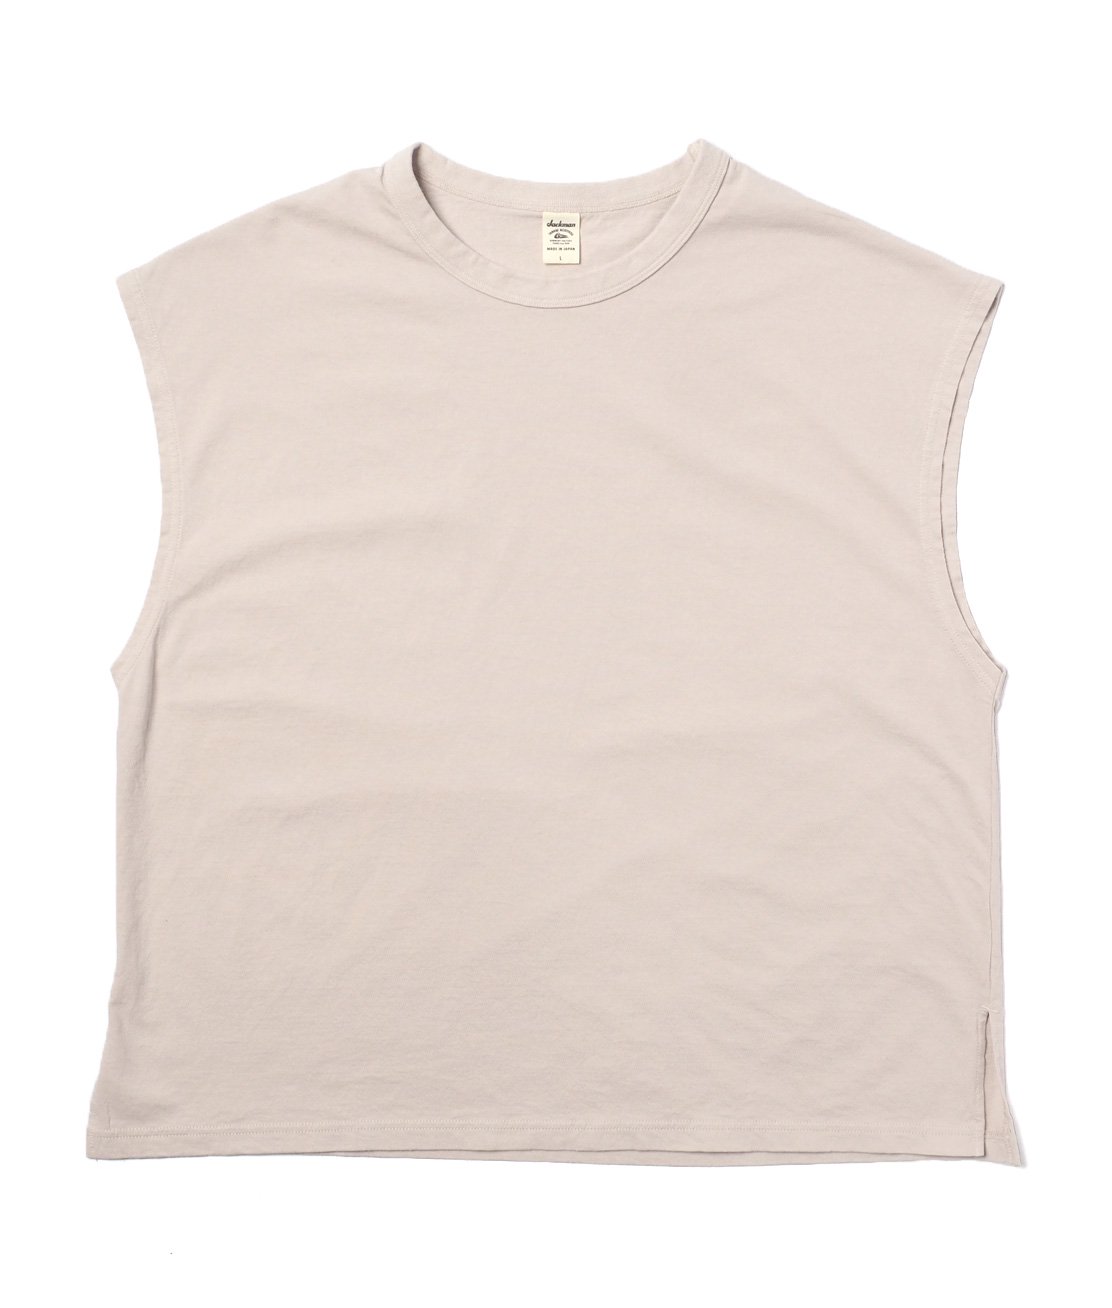 JACKMAN】JM5330 SLEEVELESS SHIRT - DROP GRAY スリーブレスTシャツ